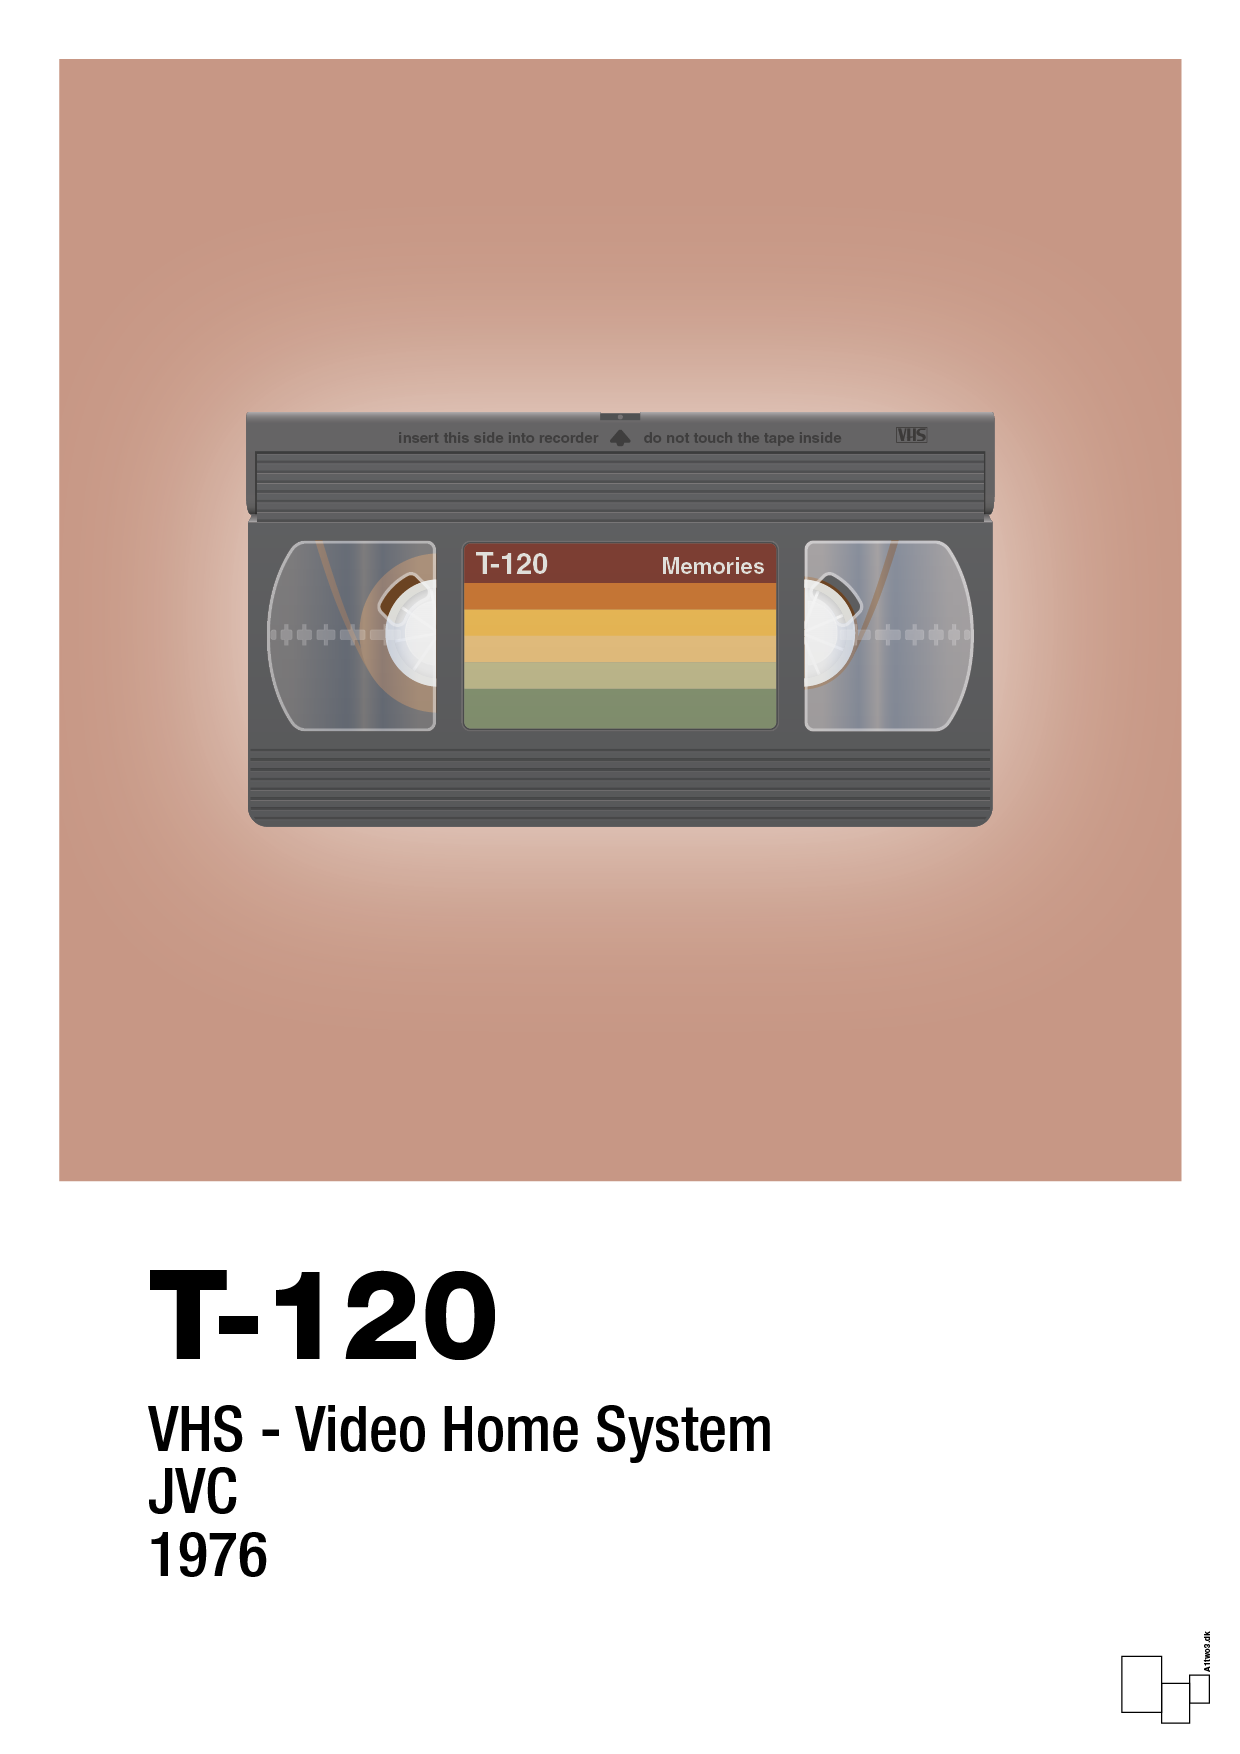 videobånd t-120 - Plakat med Grafik i Powder